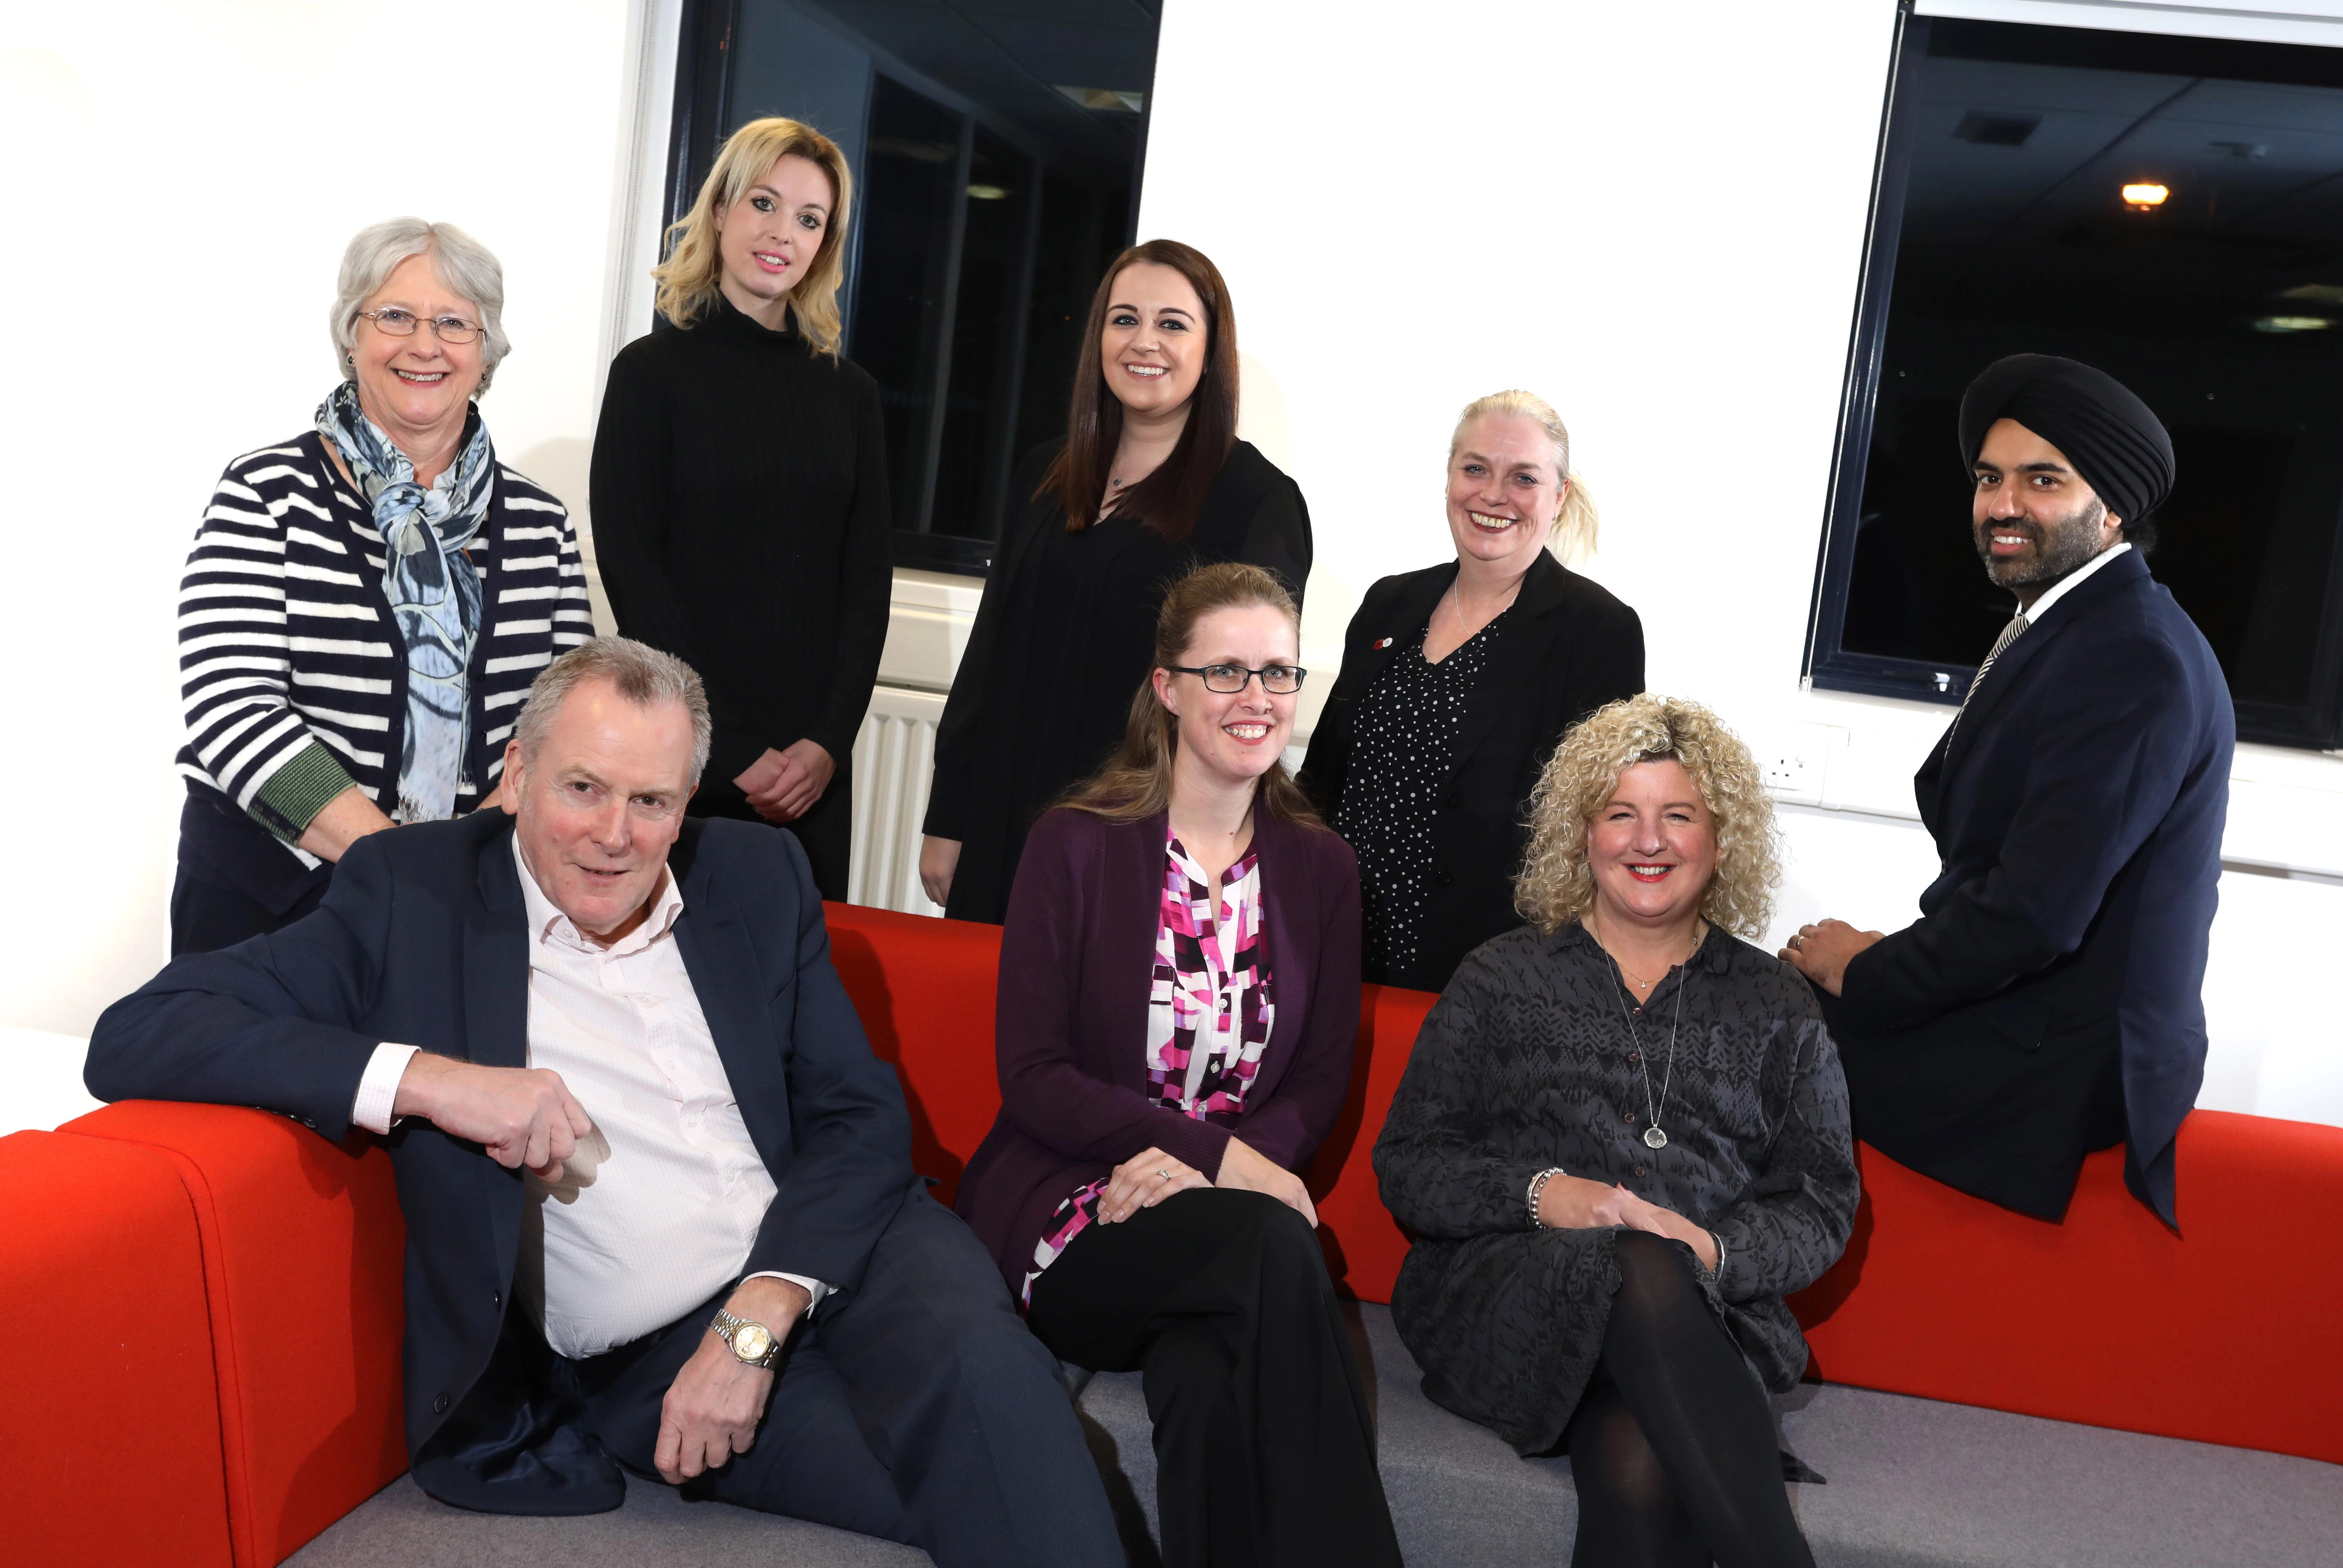 Members of the regional Northumberland, Tyne & Wear volunteer board